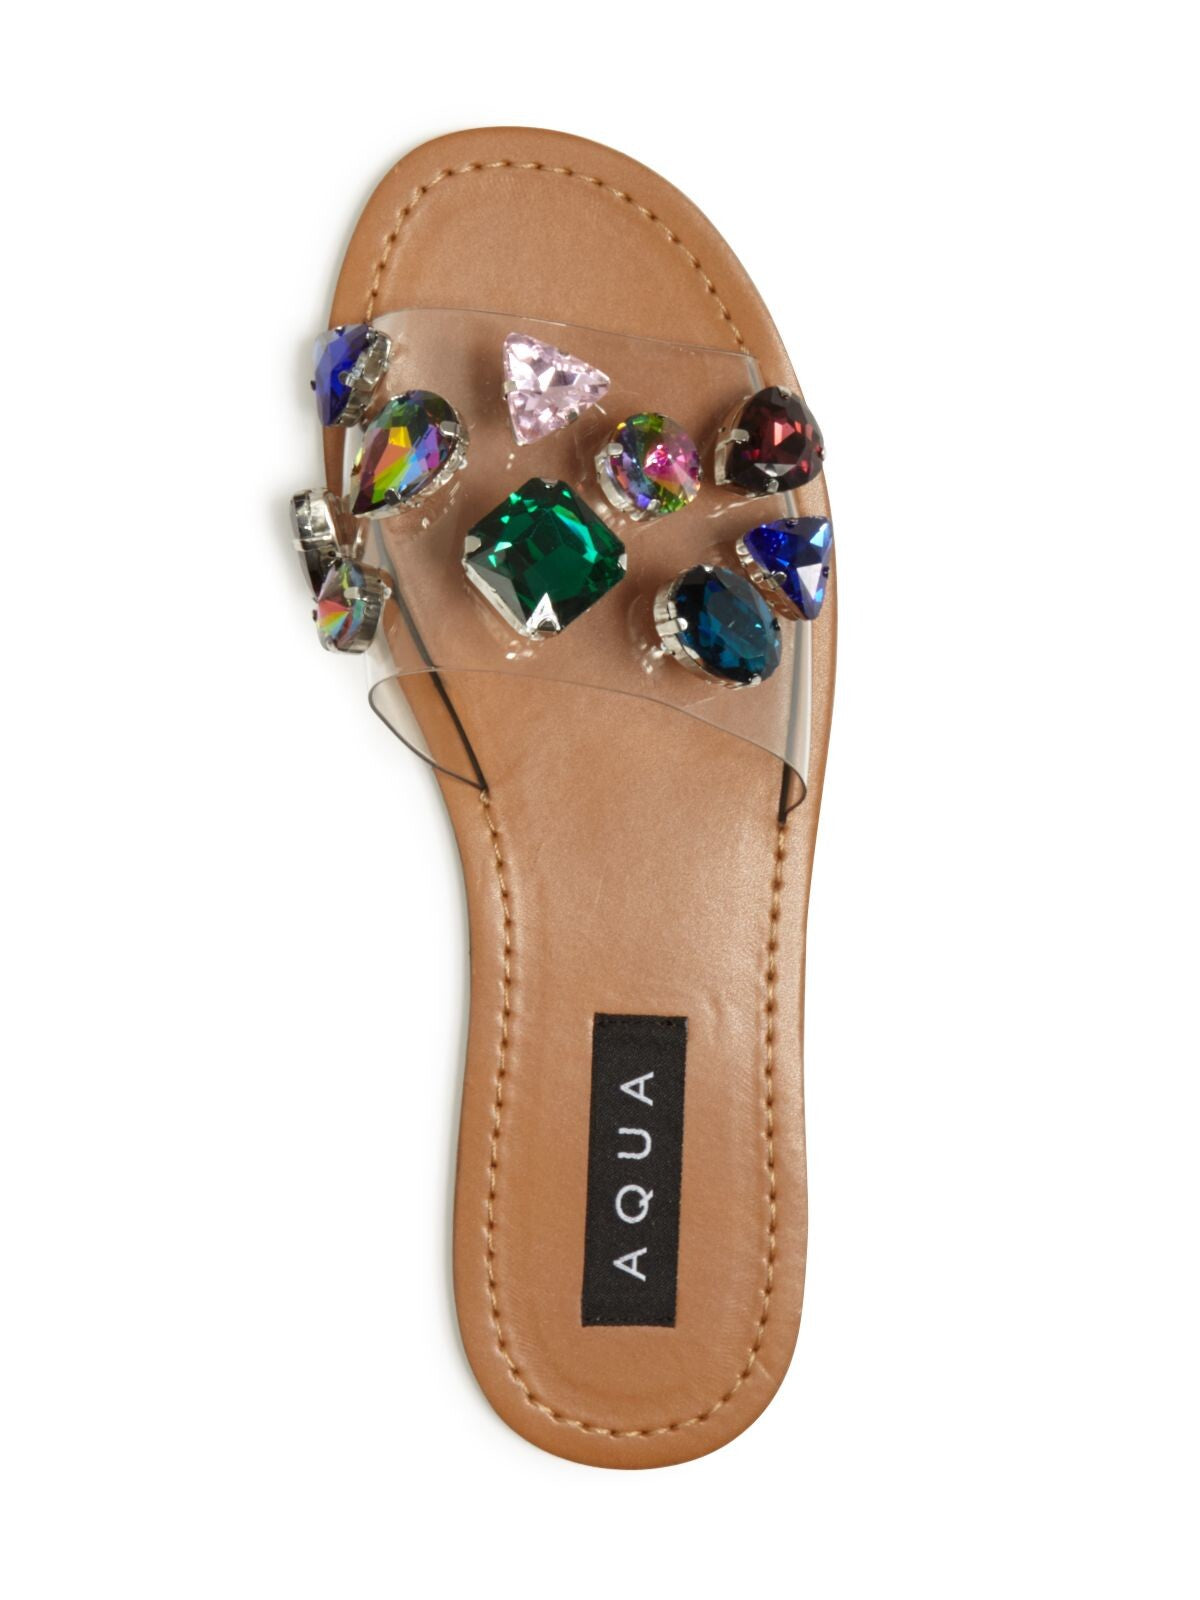 AQUA Womens Clear Transparent Embellished Trinket Round Toe Slip On Slide Sandals Shoes 6.5 M